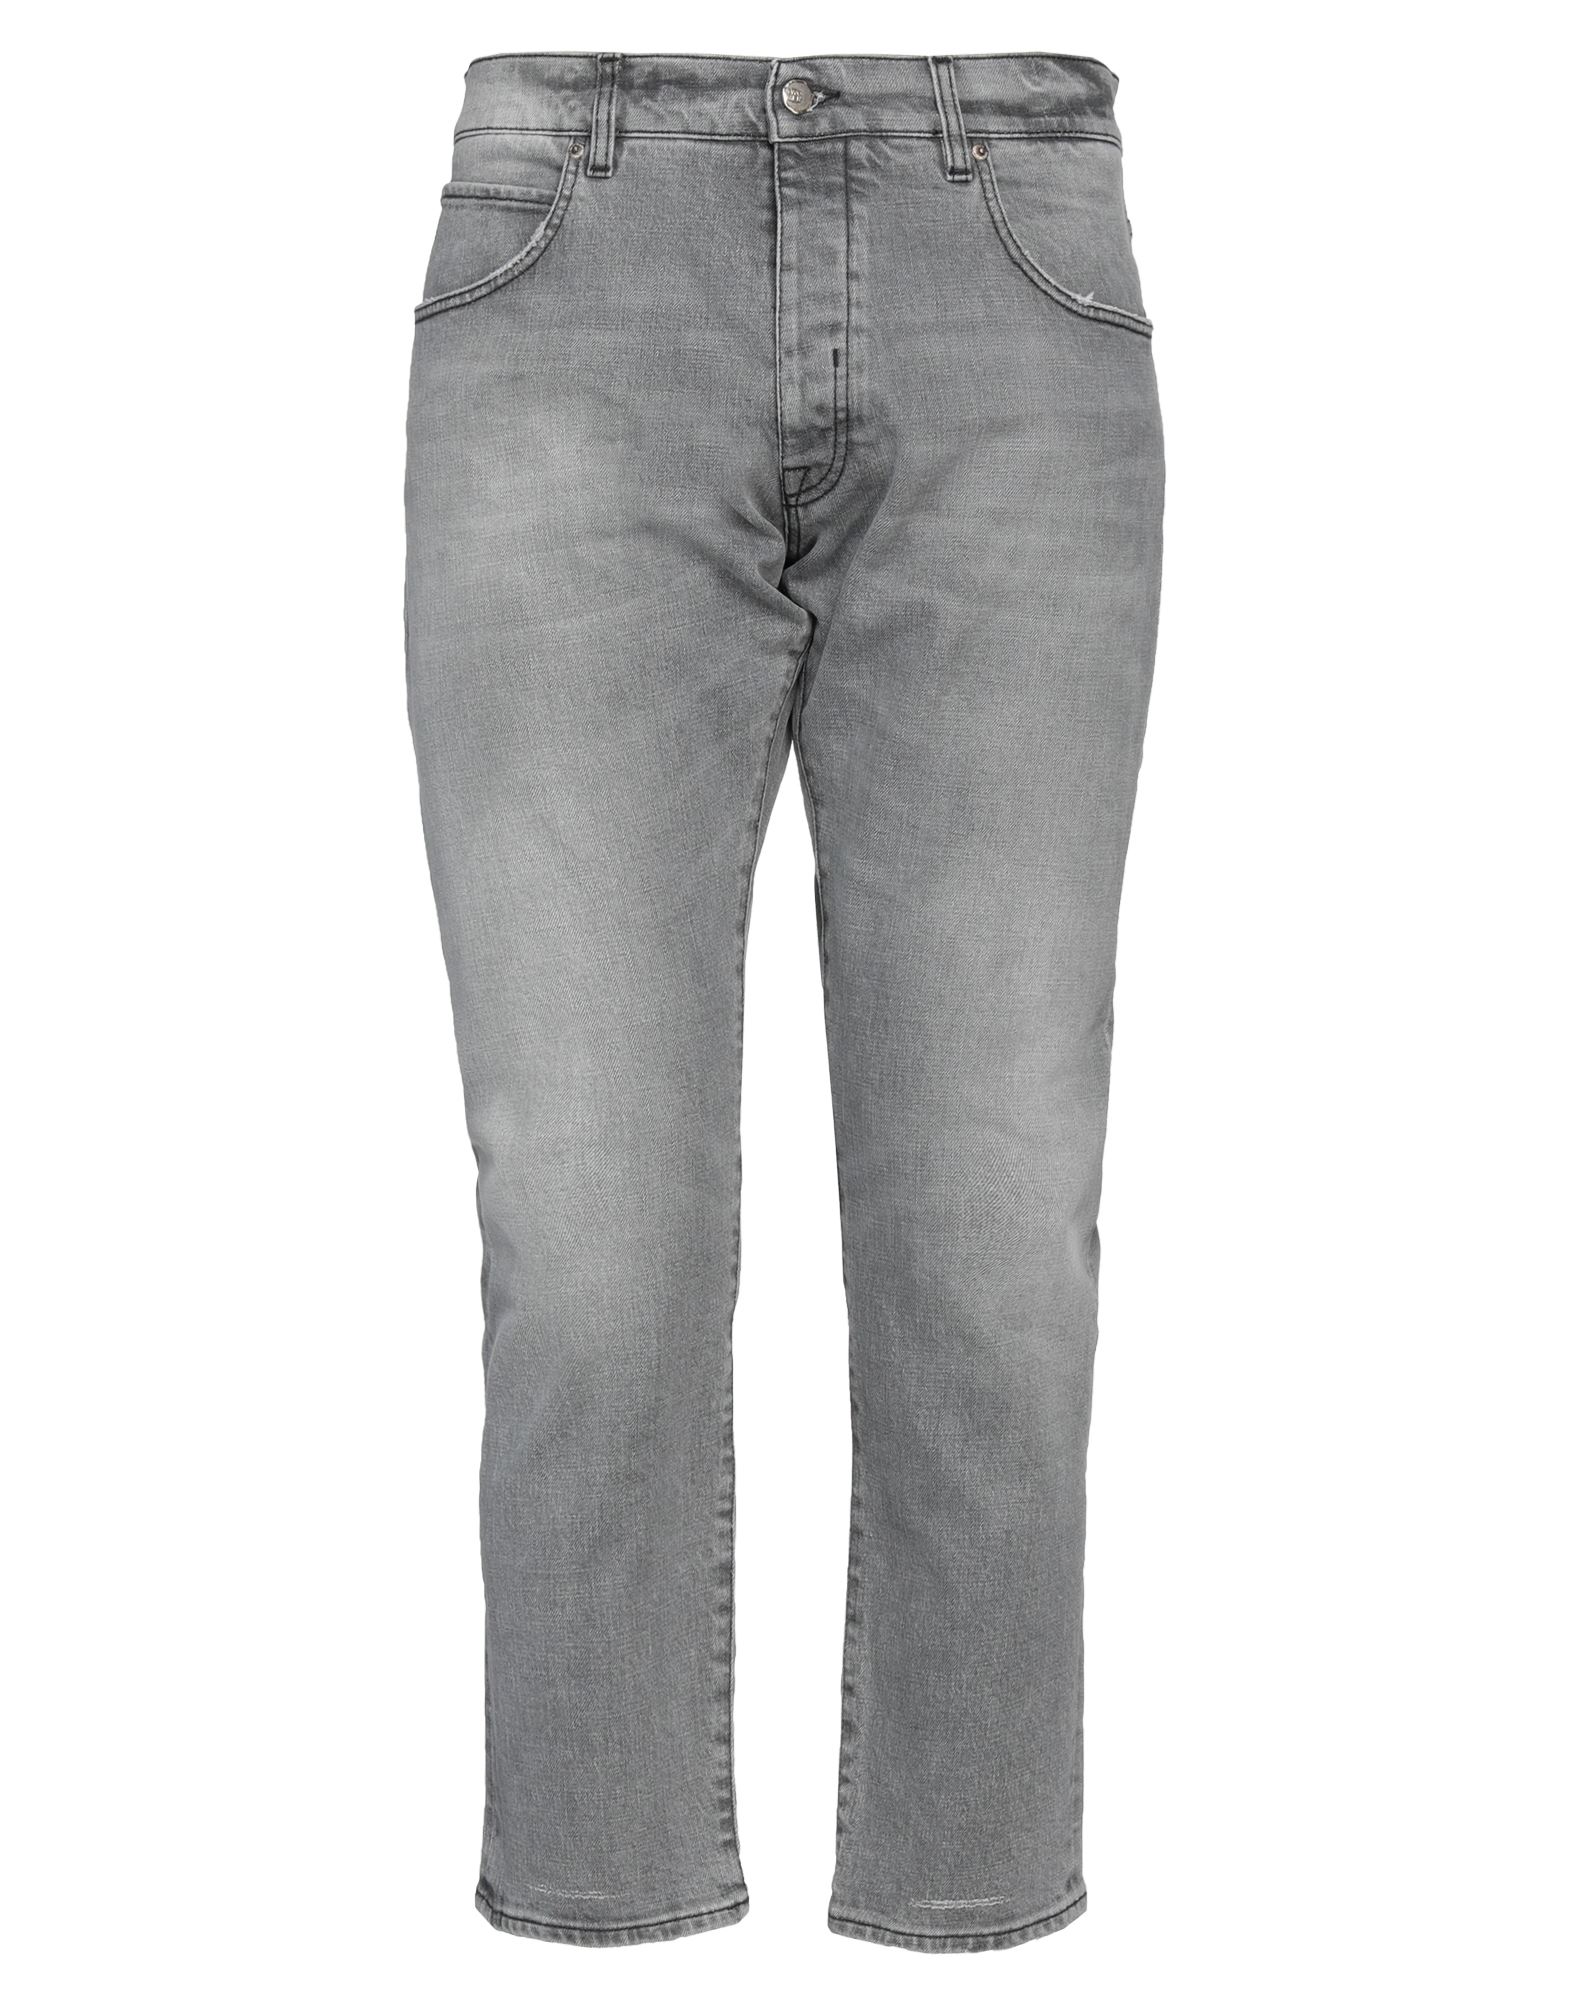 Shop 2w2m Man Jeans Grey Size 34 Cotton, Elastane, Polyester